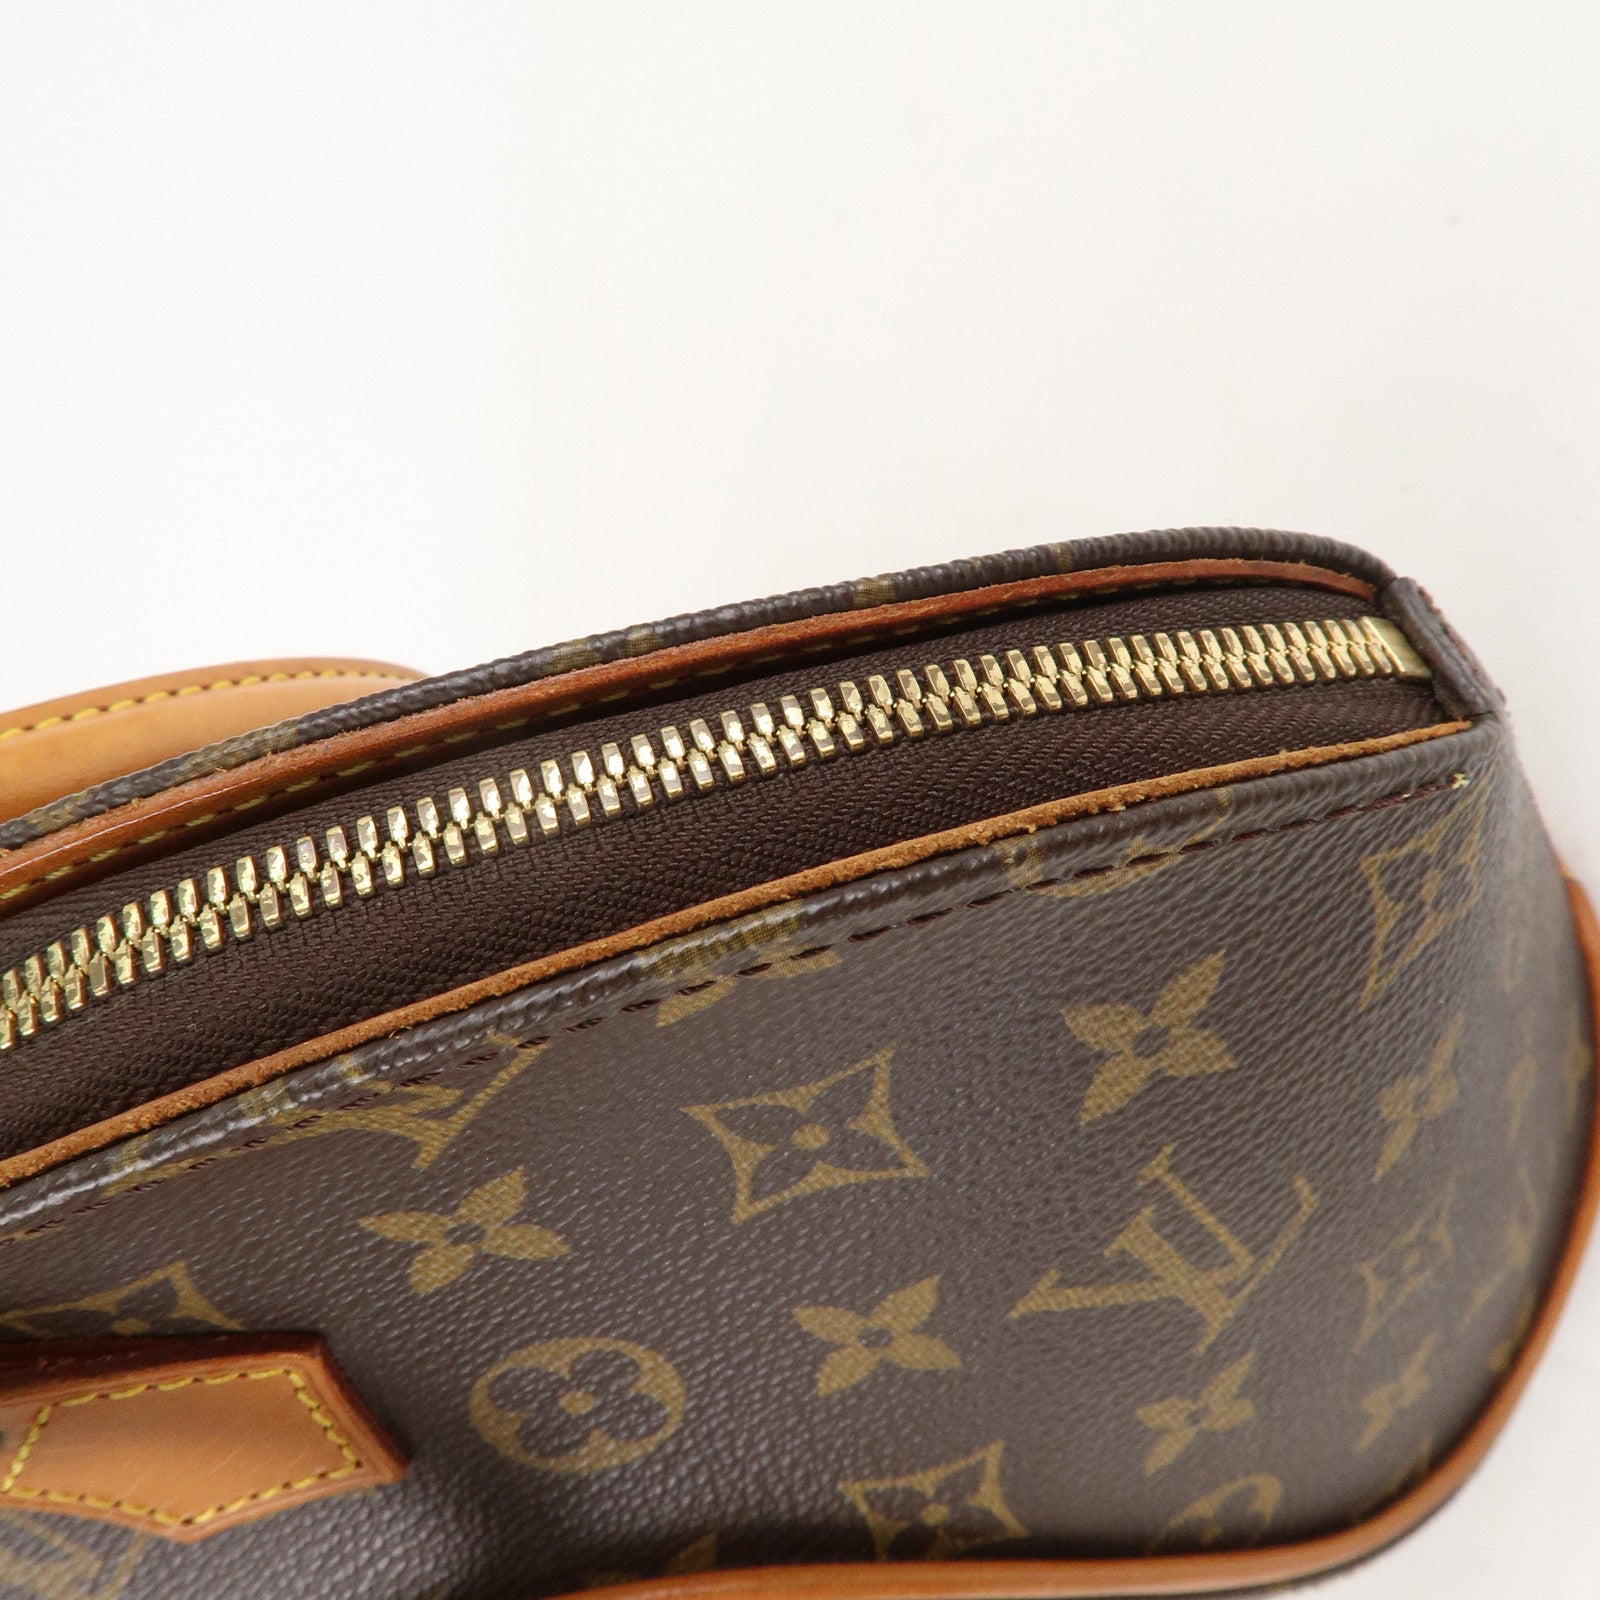 Shop for Louis Vuitton Monogram Canvas Leather Ellipse PM Bag